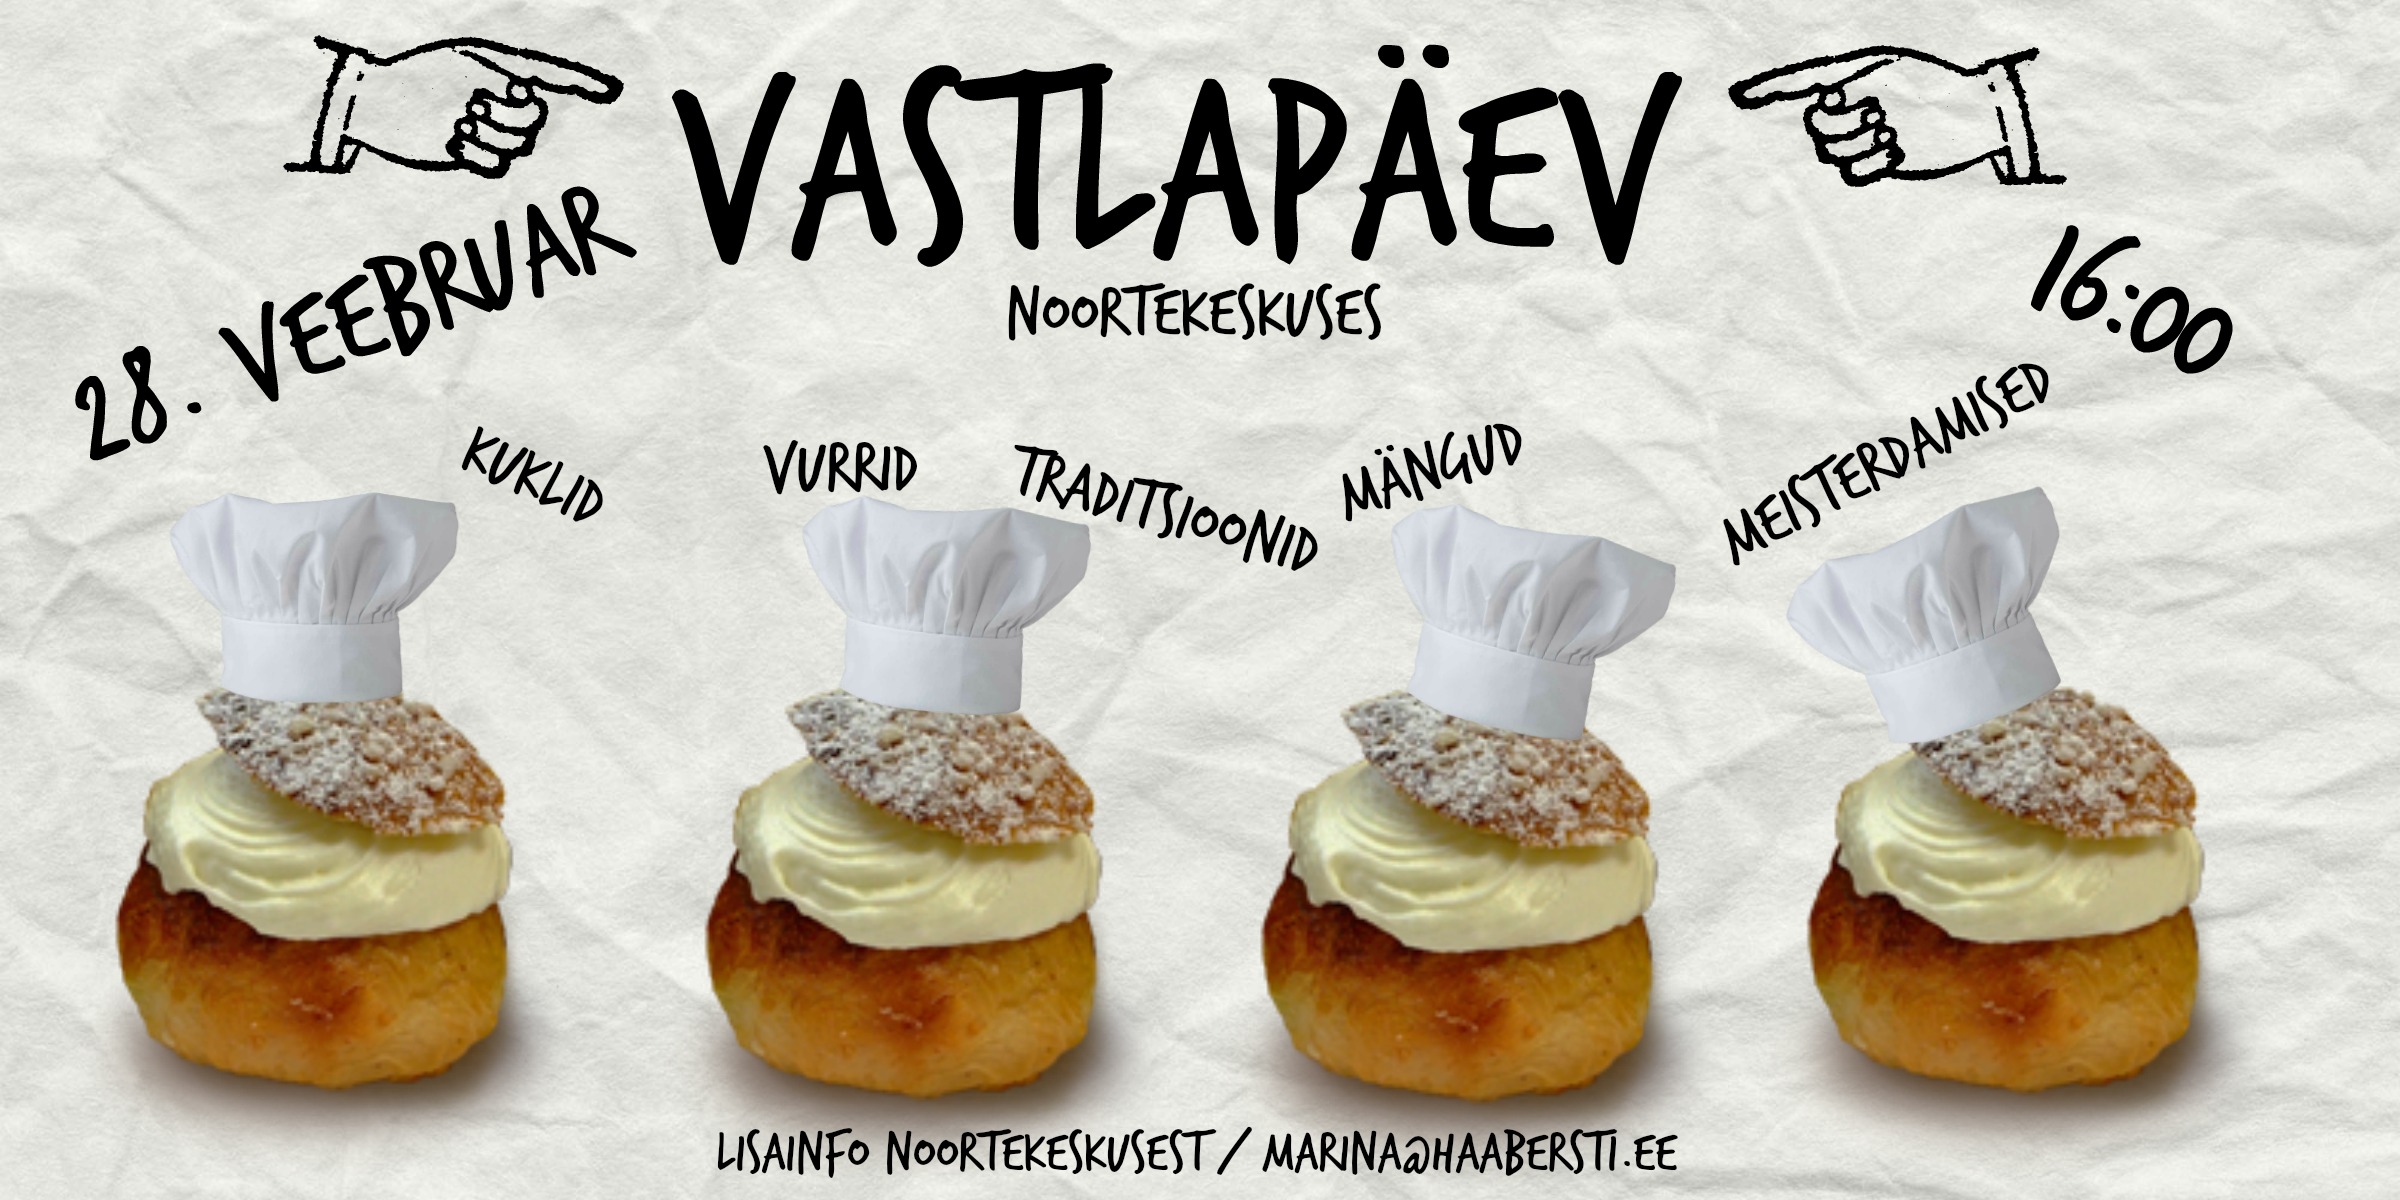 Résultat de recherche d'images pour "Vastlapäev"